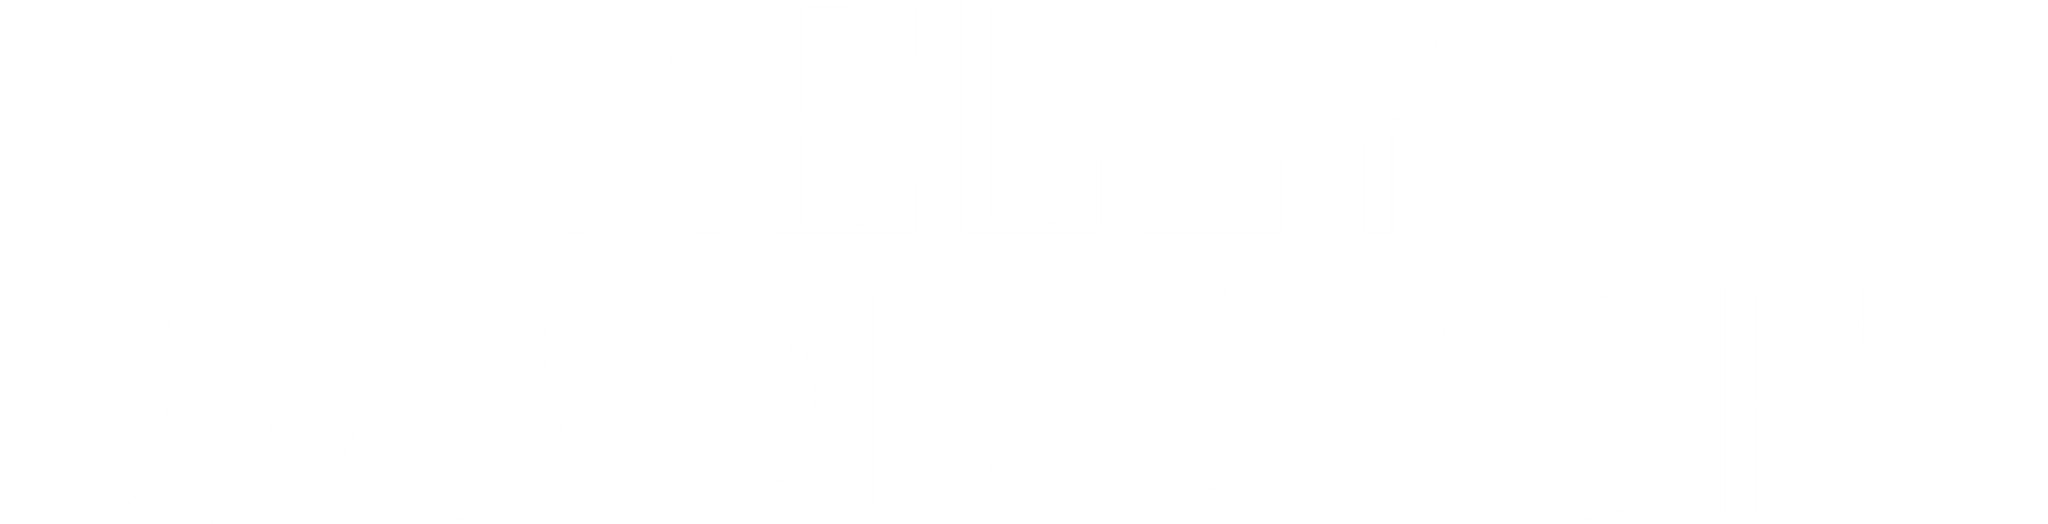 Kelly Woodcroft Logo